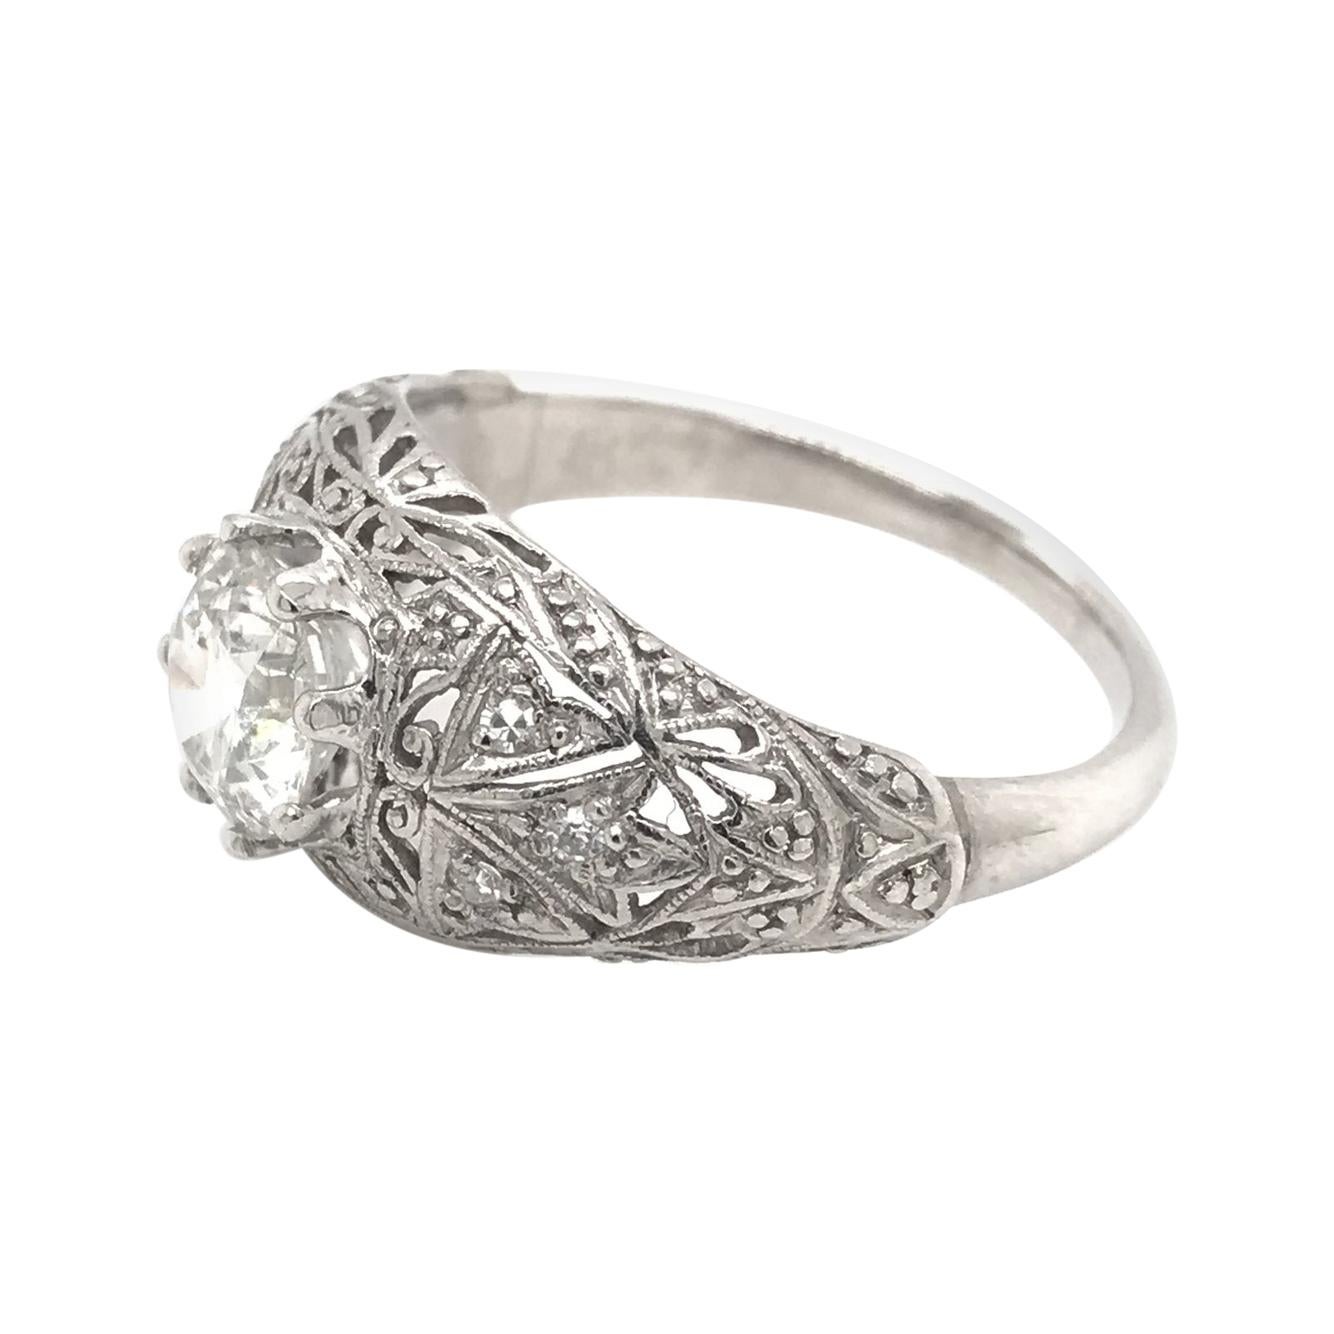 Antique 1.15 Carat Art Deco Platinum Diamond Engagement Ring